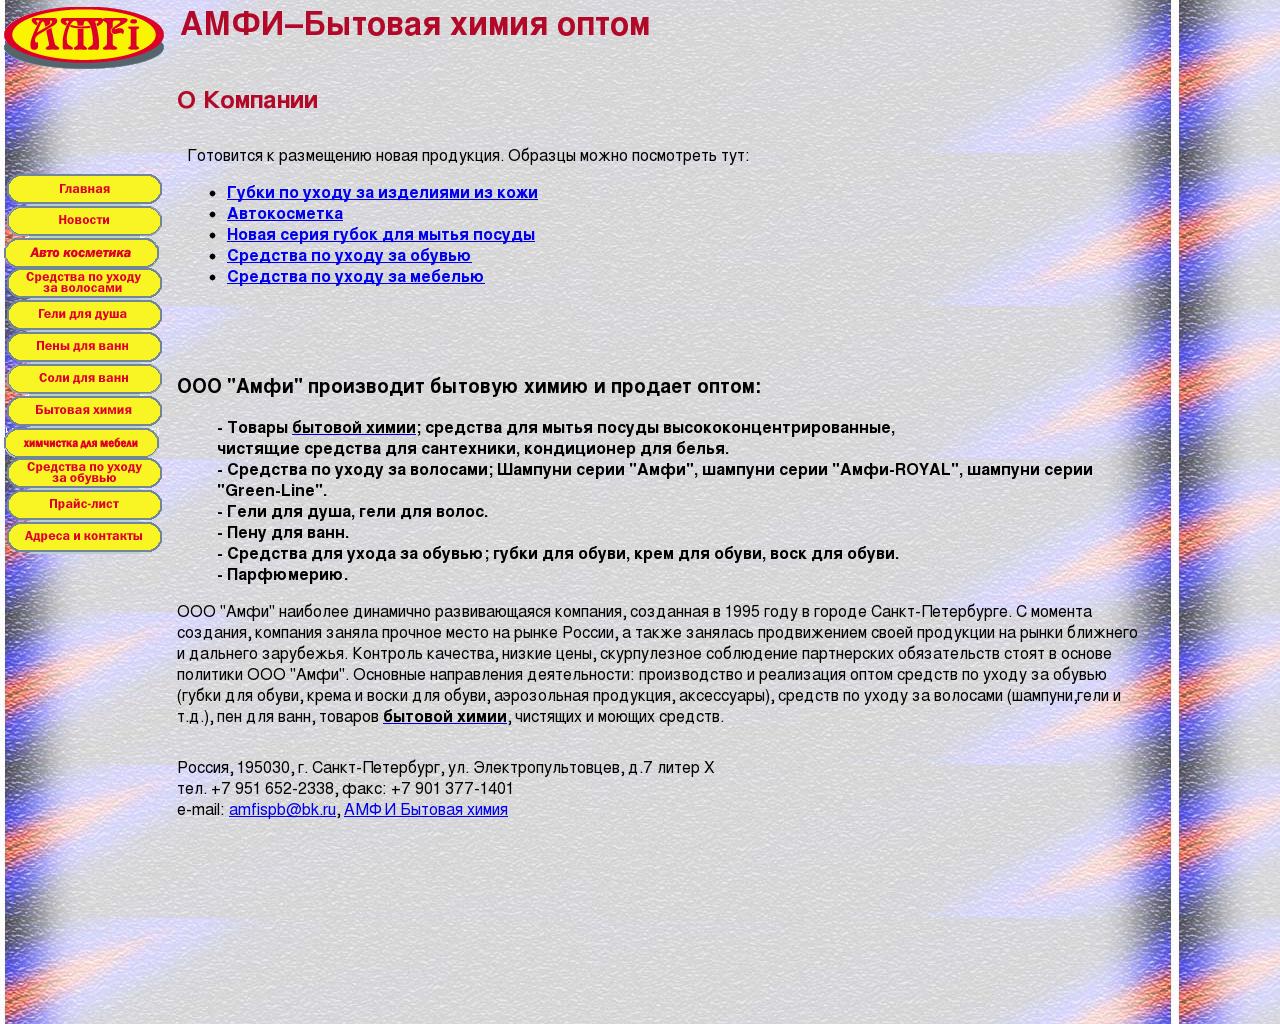 Изображение сайта amfi-spb.ru в разрешении 1280x1024